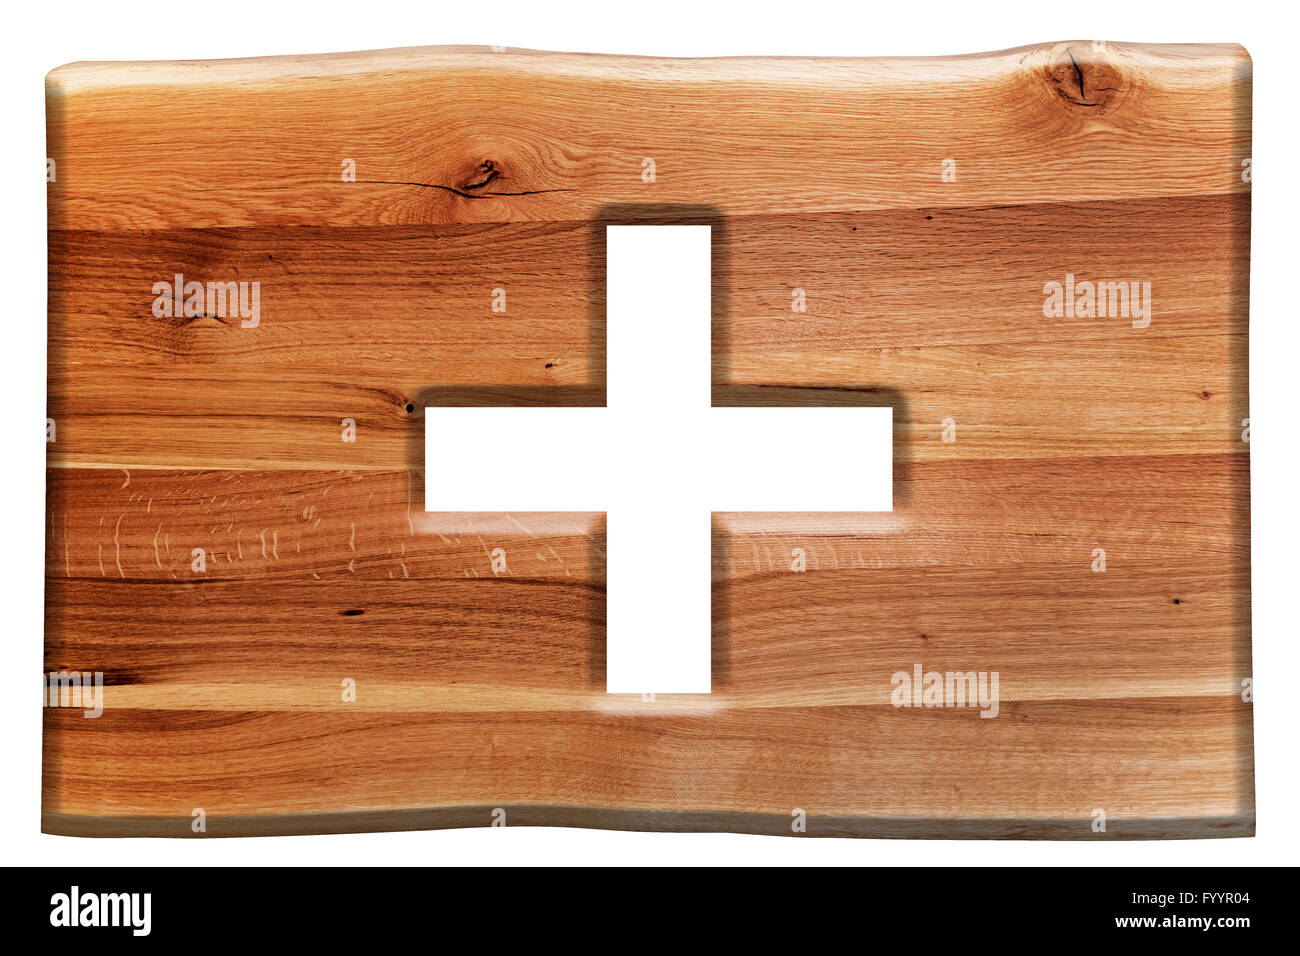 Cross cut en planche de bois isolated on white Banque D'Images